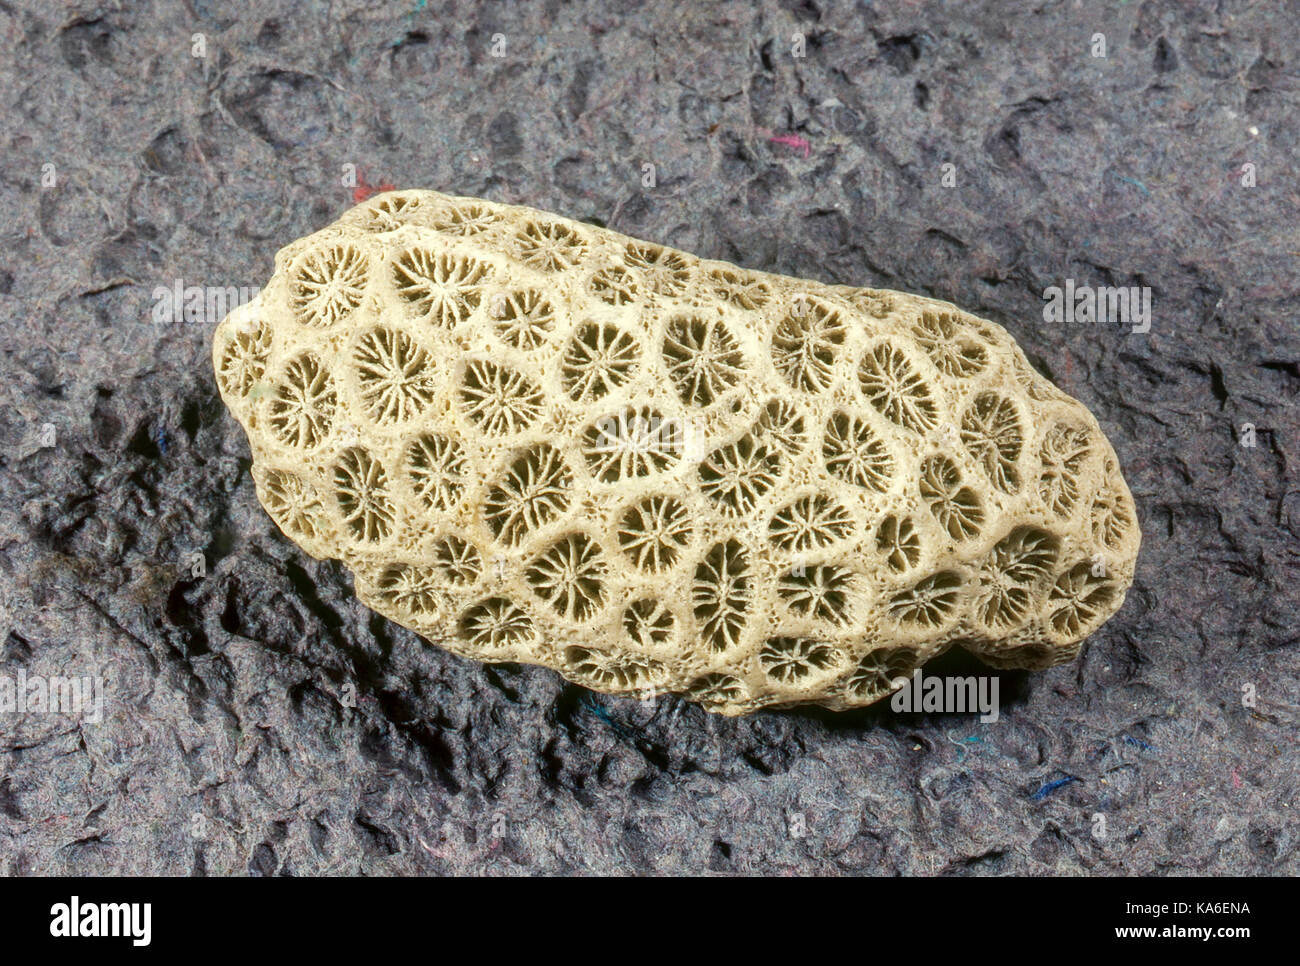 Esponja de arrecifes de coral del mar de piedra de textura, India, Asia - stp 258973 Foto de stock